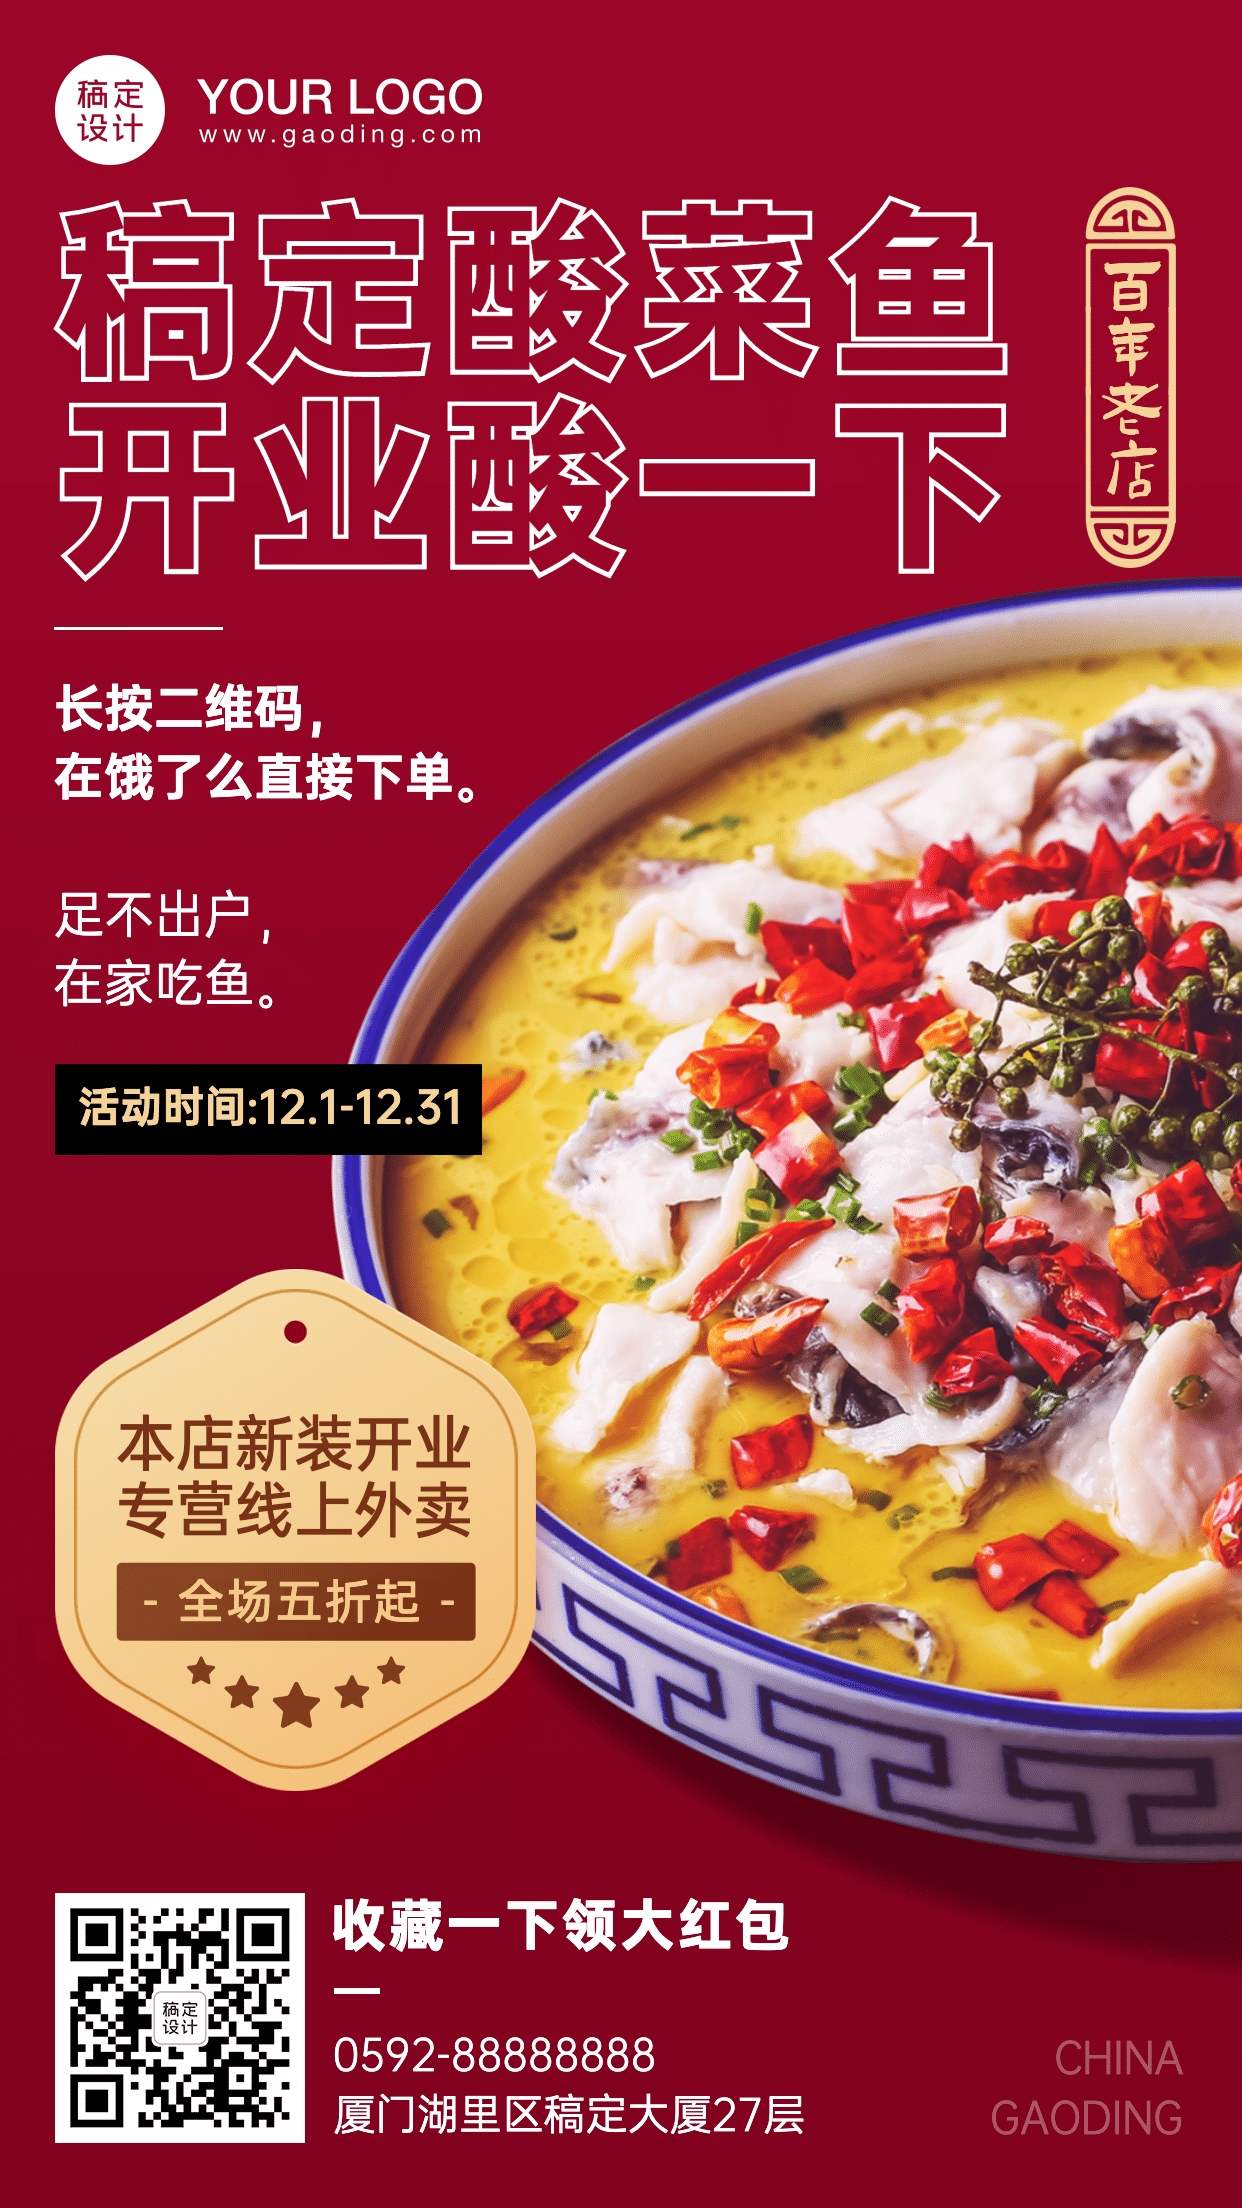 餐饮酸菜鱼开业外卖活动海报